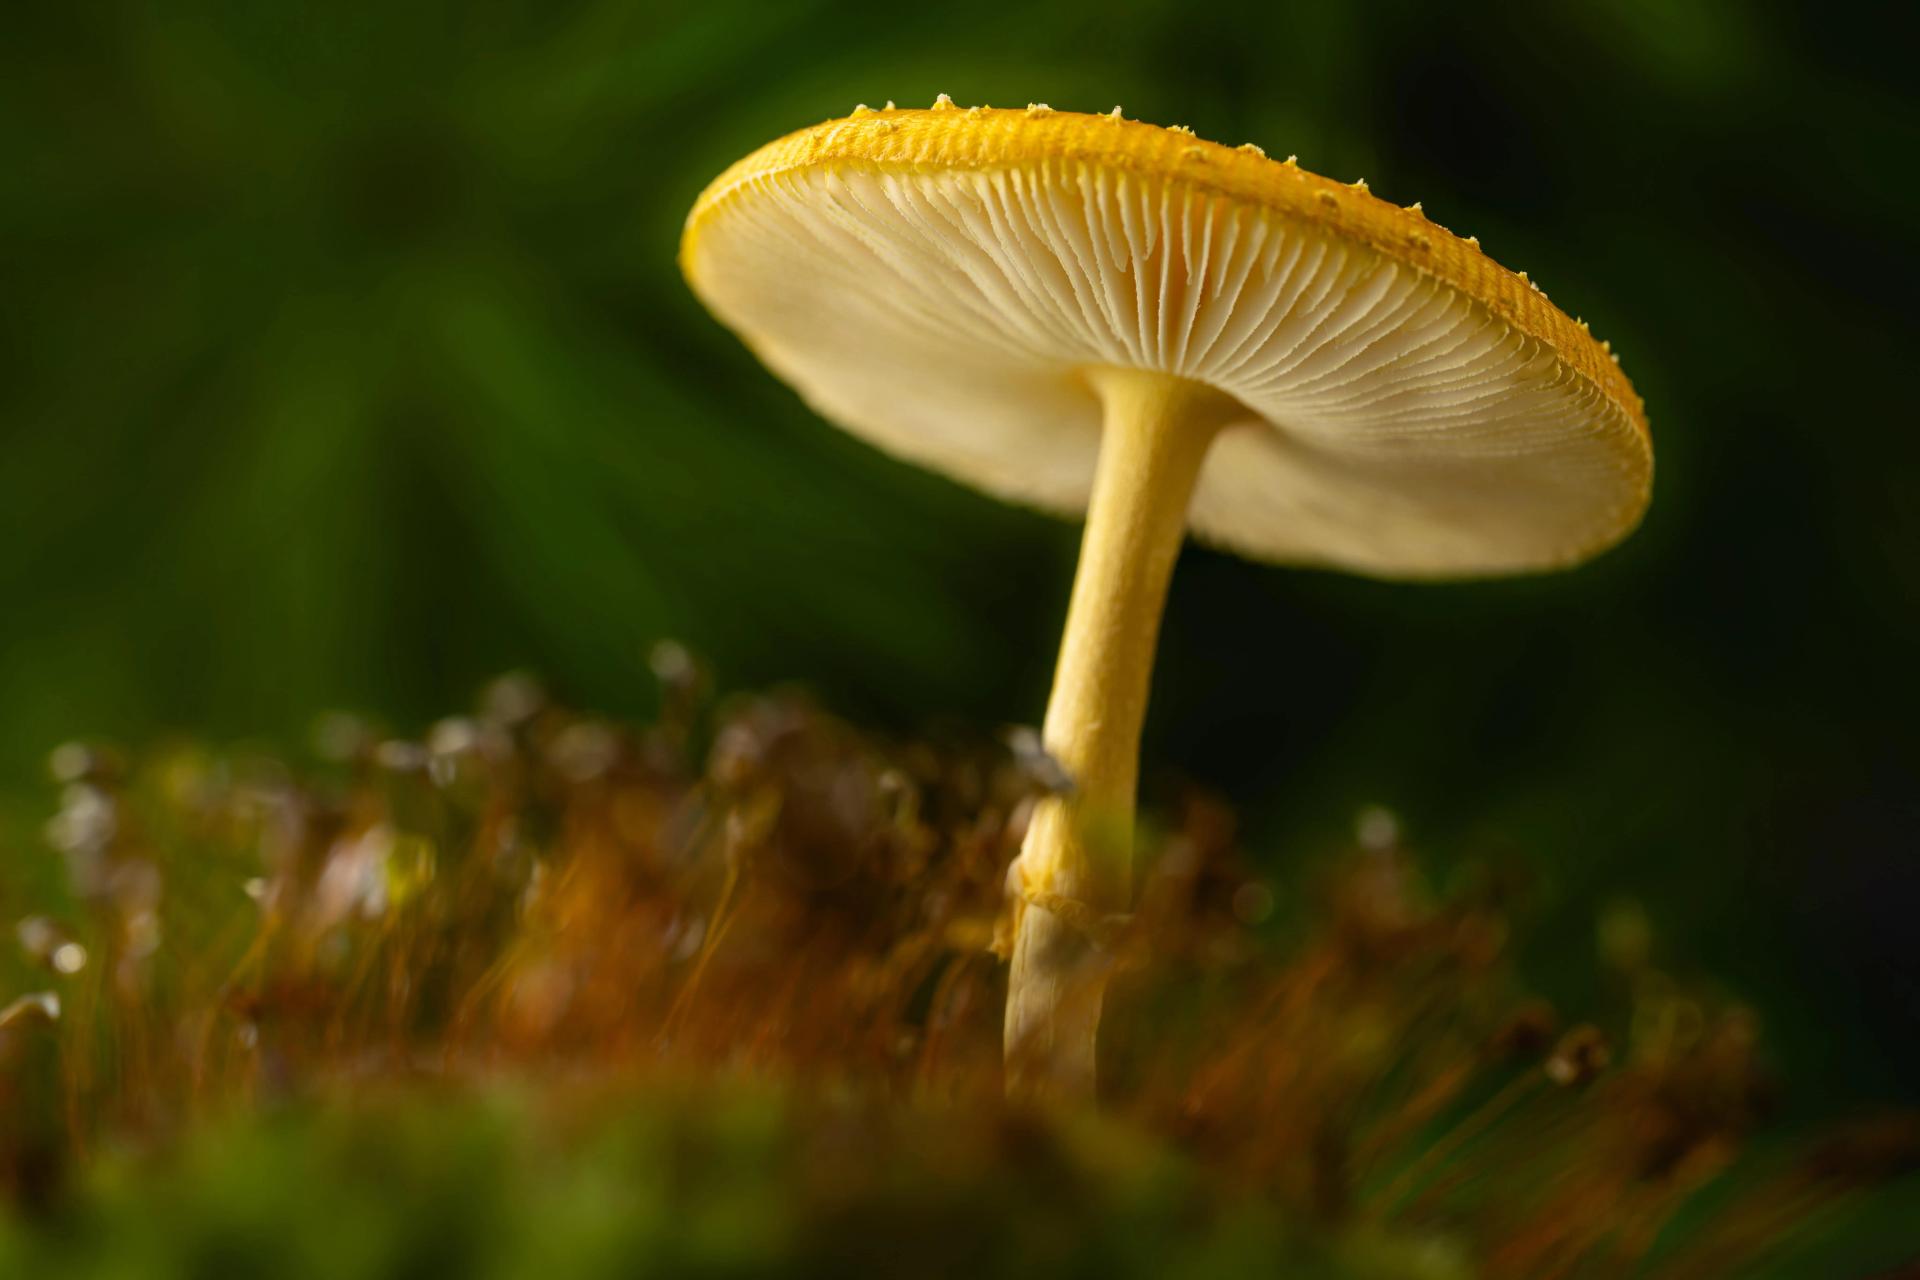 A Closeup of a Mushroom